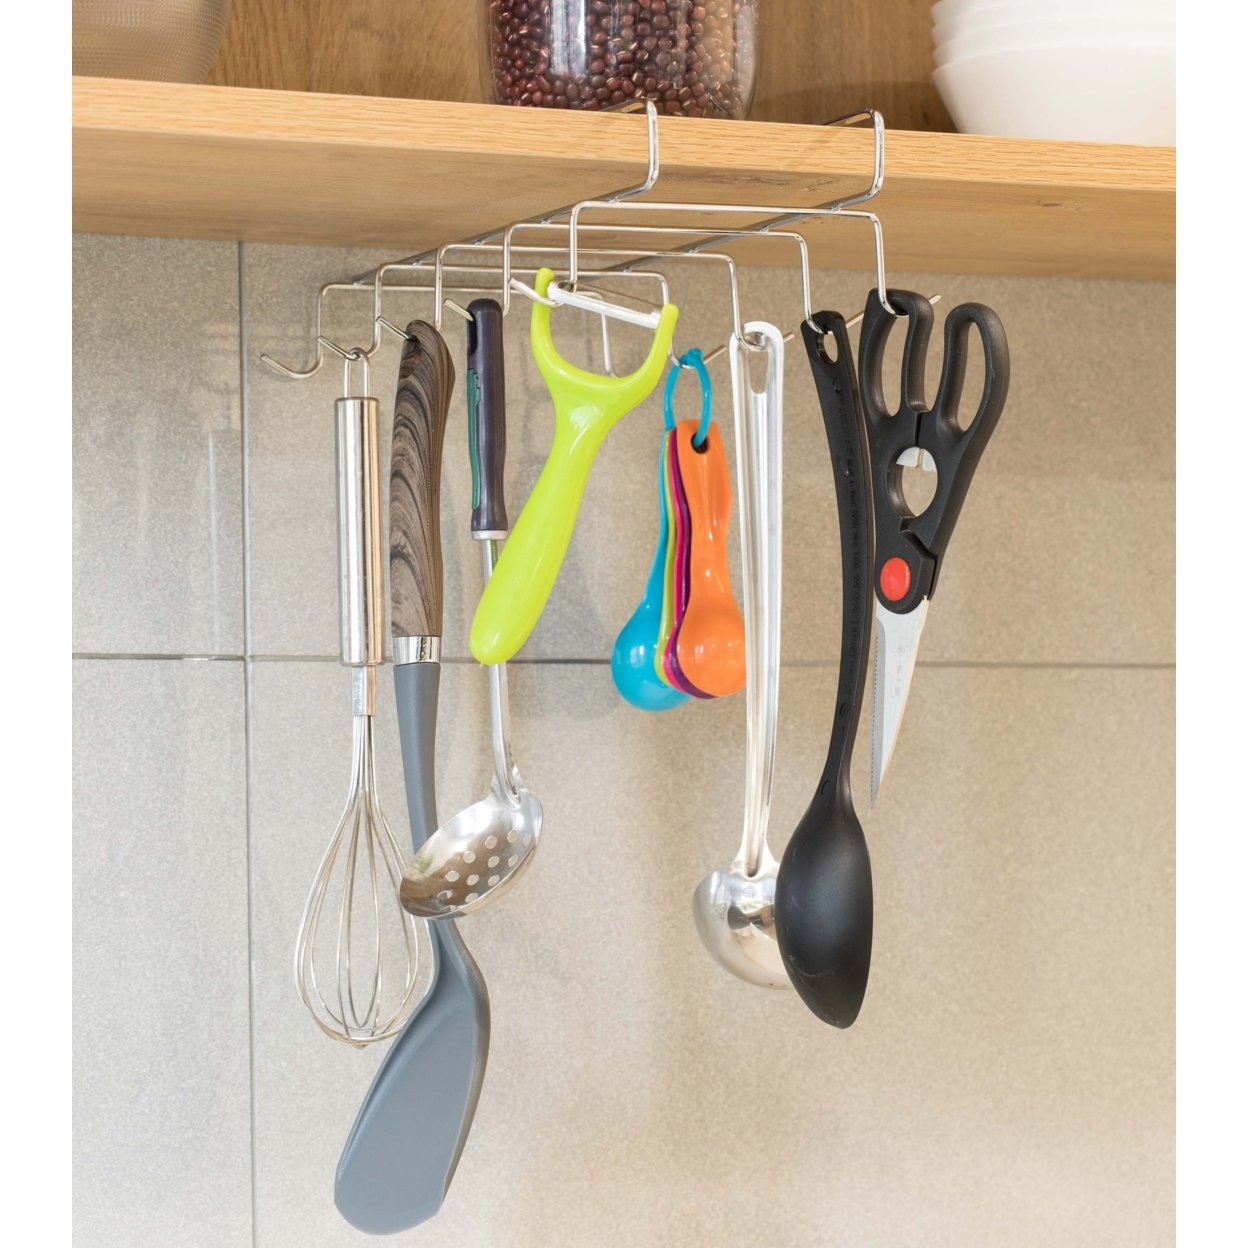 Cup Rack Under Shelf, Kitchen Utensil Drying Hooks